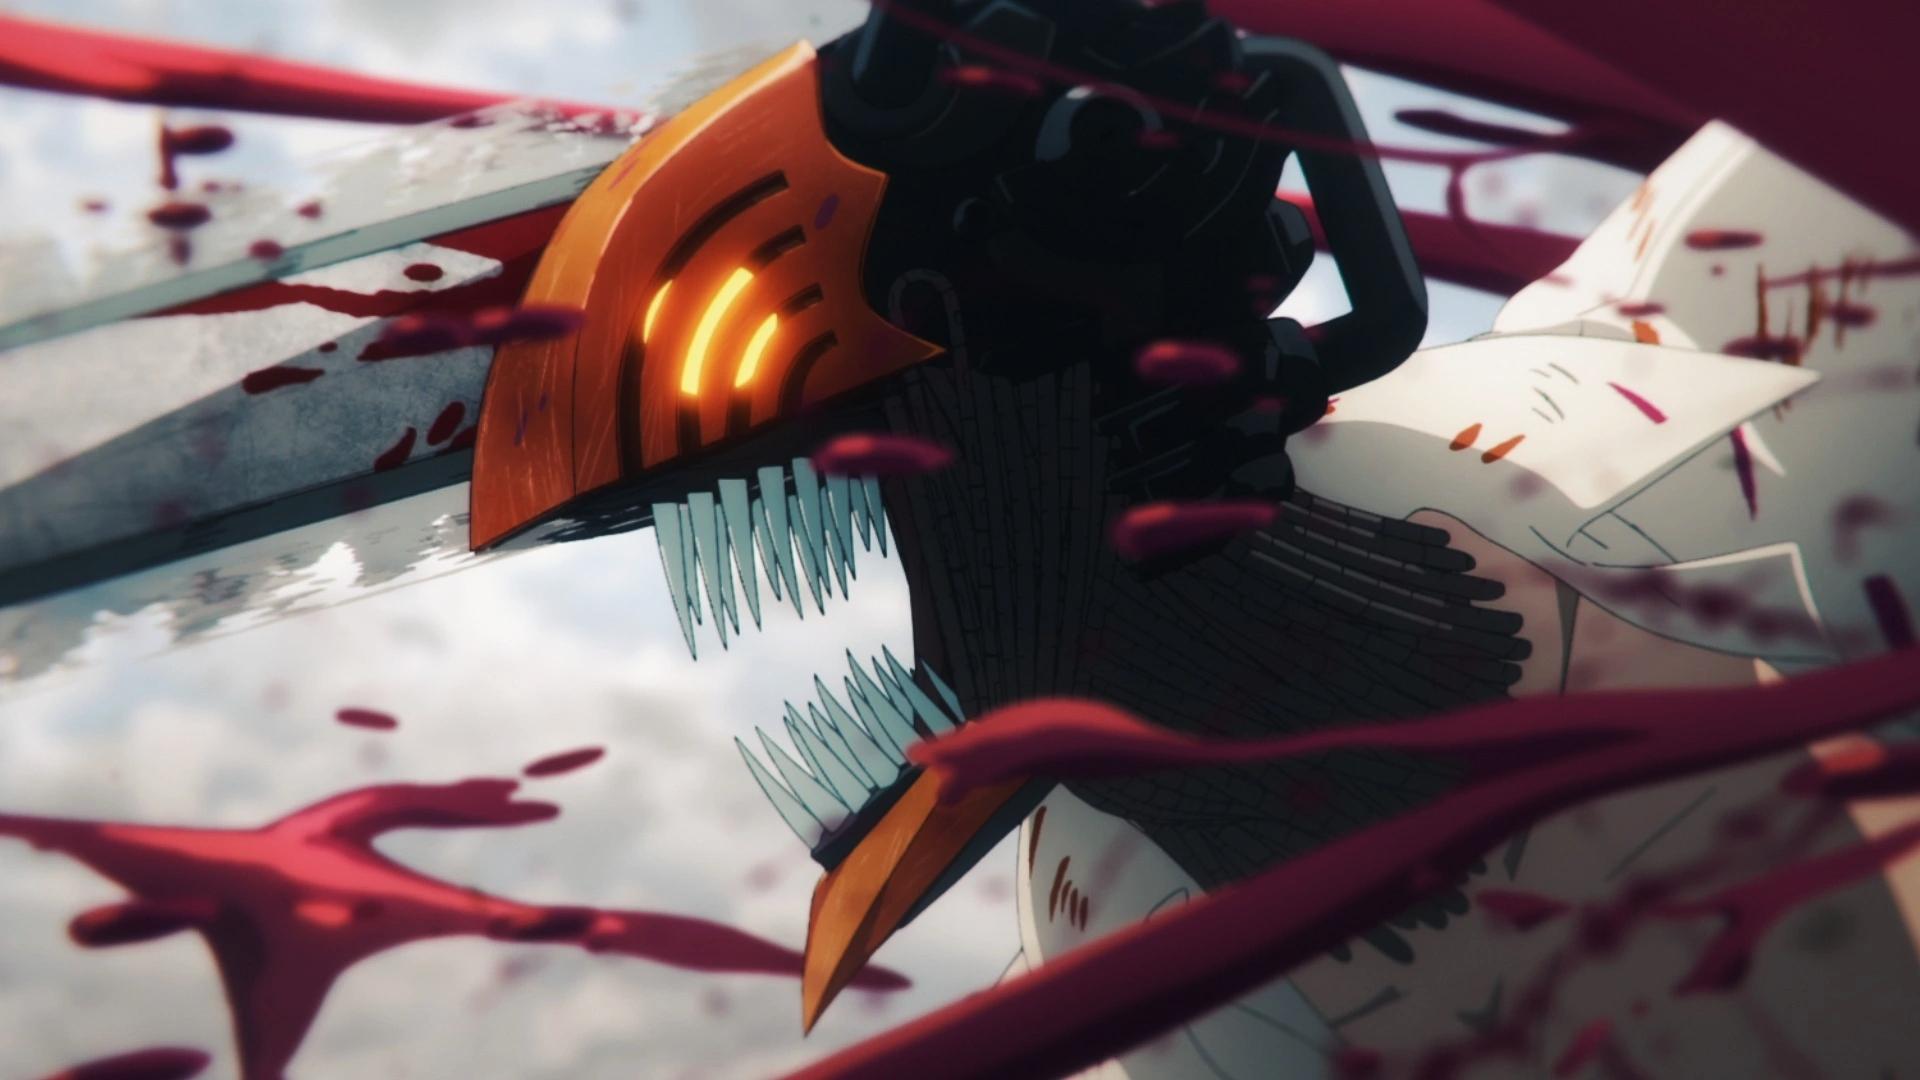 Chainsaw Man: Conheça o anime mais comentado do momento – Nerdistraido